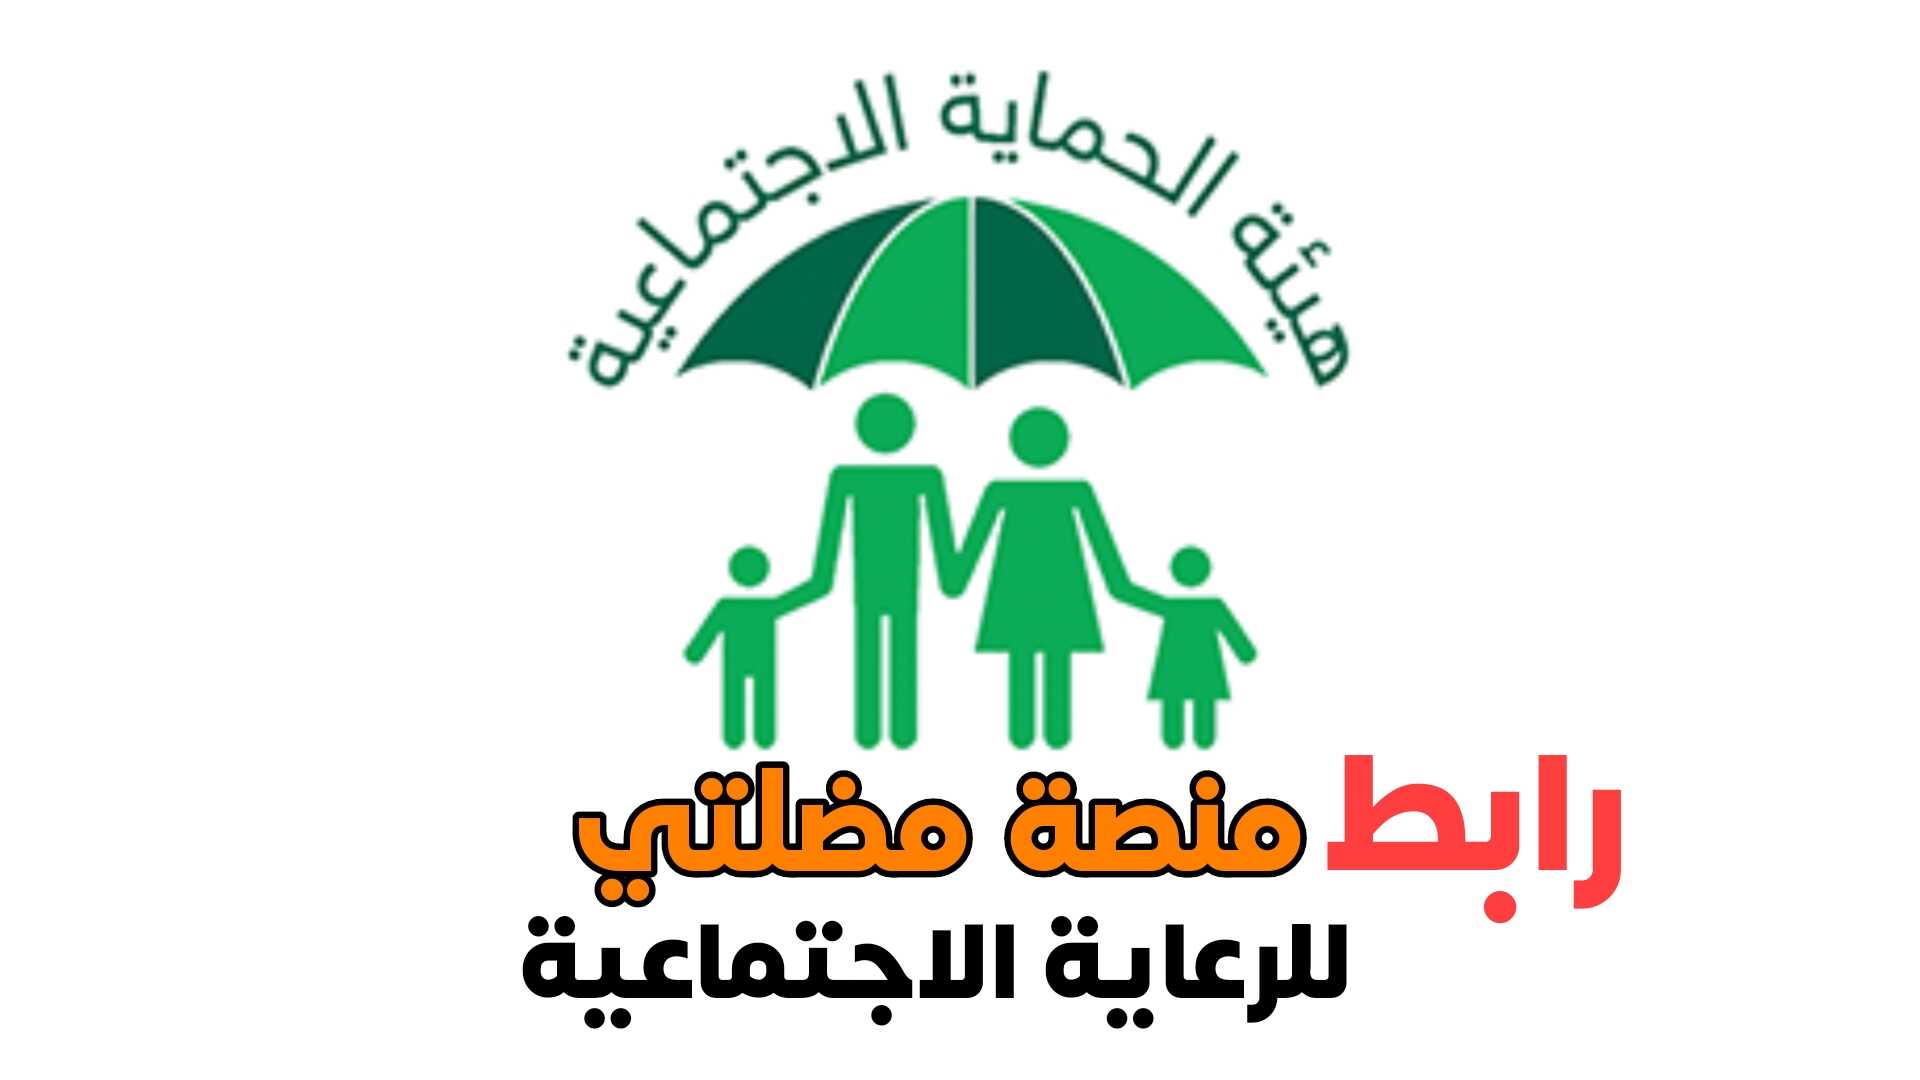 رابط منصة مضلتي هيئة الرعاية الاجتماعية في داخل العراق